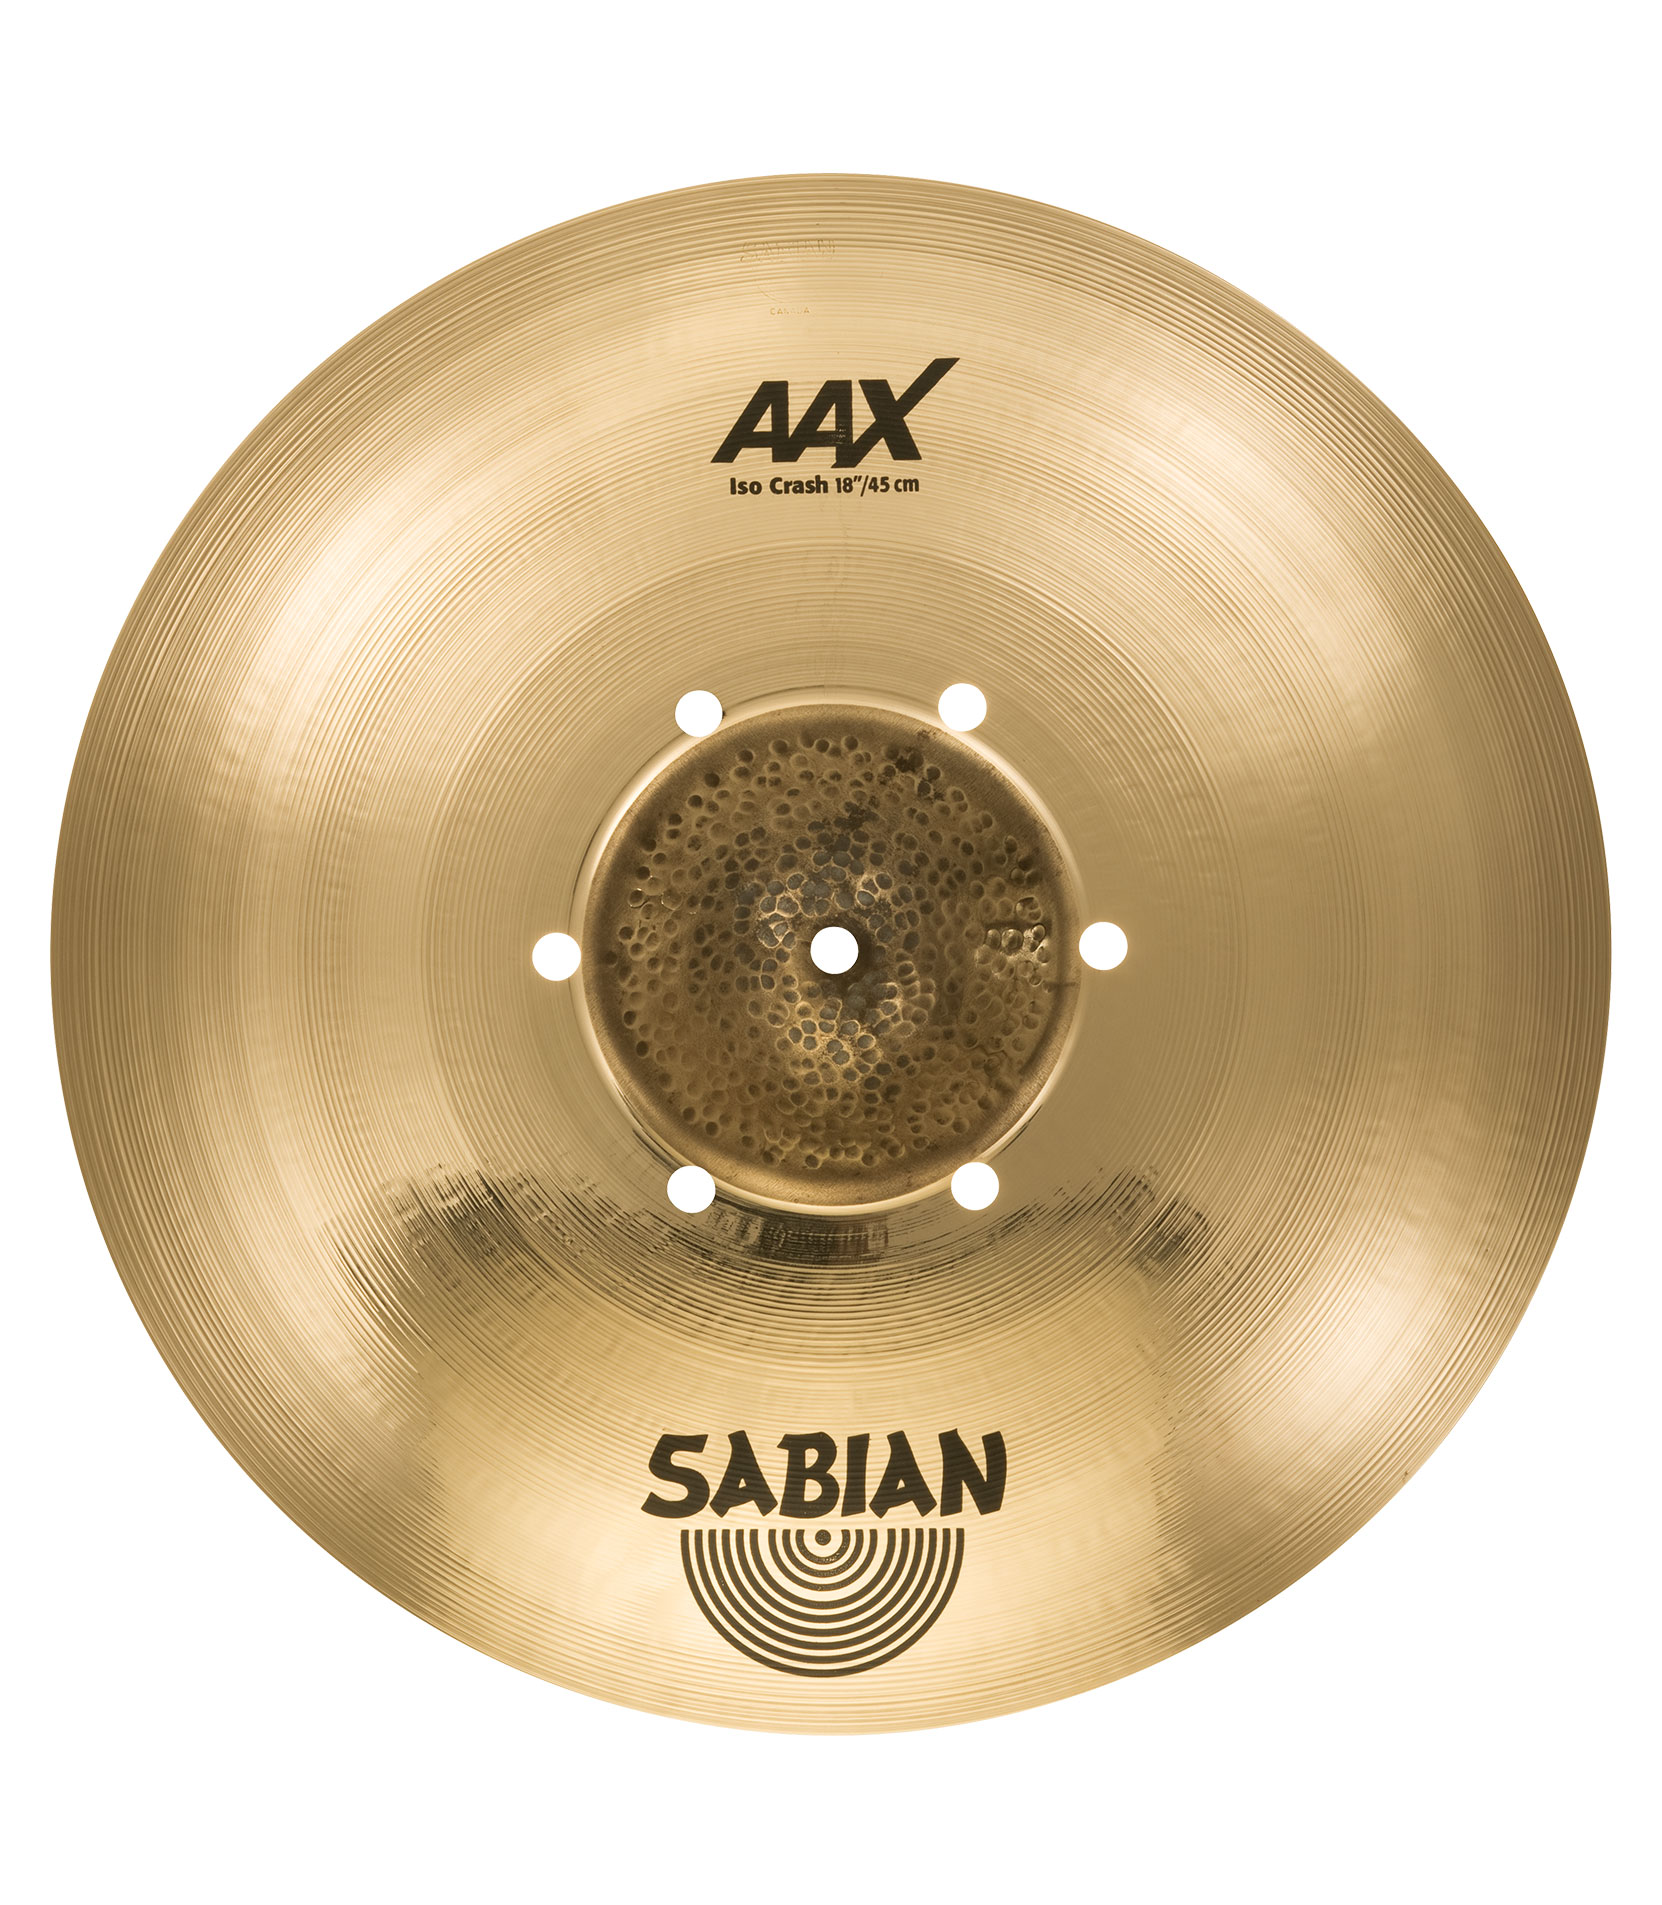 Sabian - 18 AAX Iso Crash